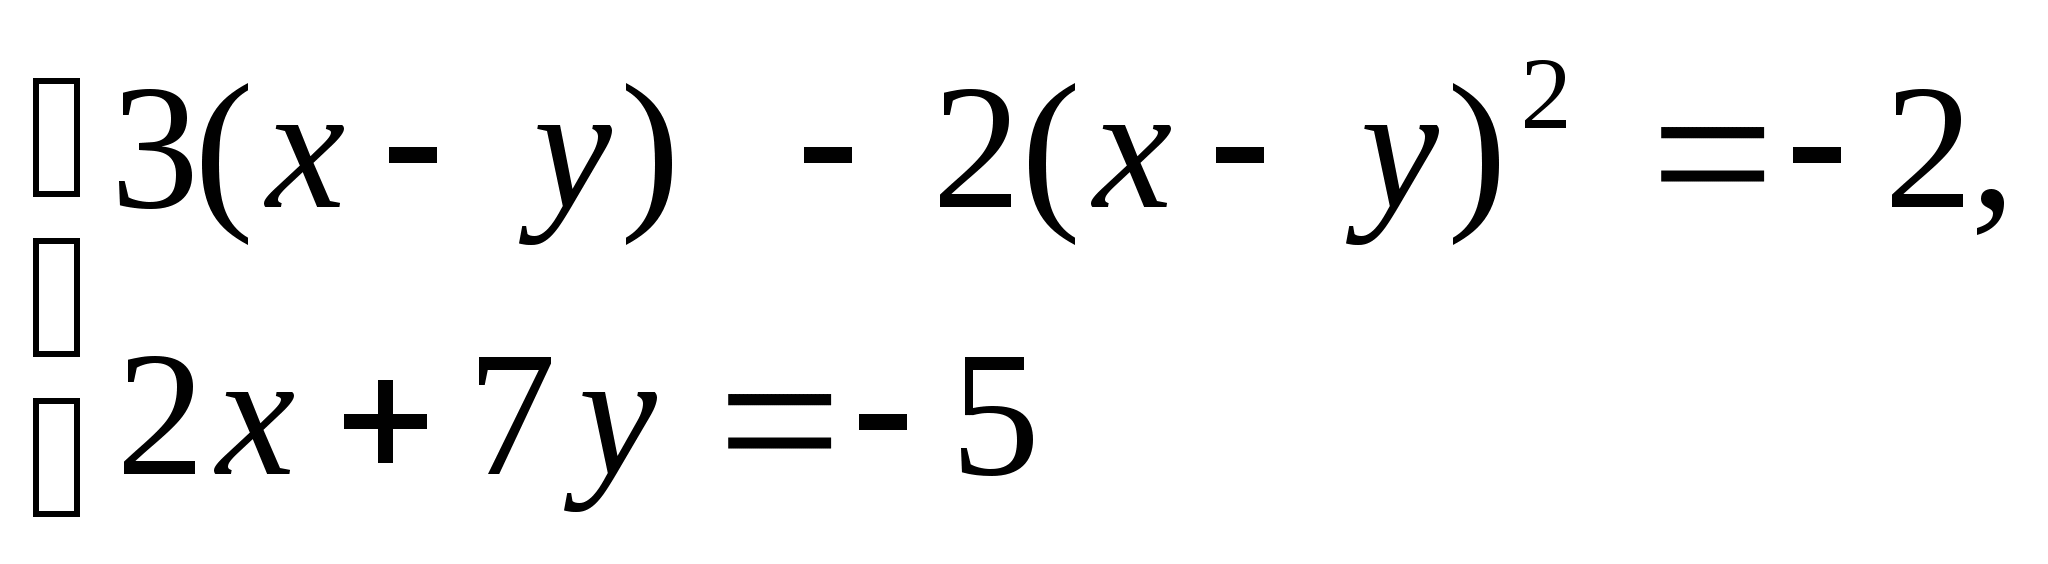 Конспект урока по алгебре в 9 классе на тему Методы решения систем уравнений. Метод введения новых переменных.